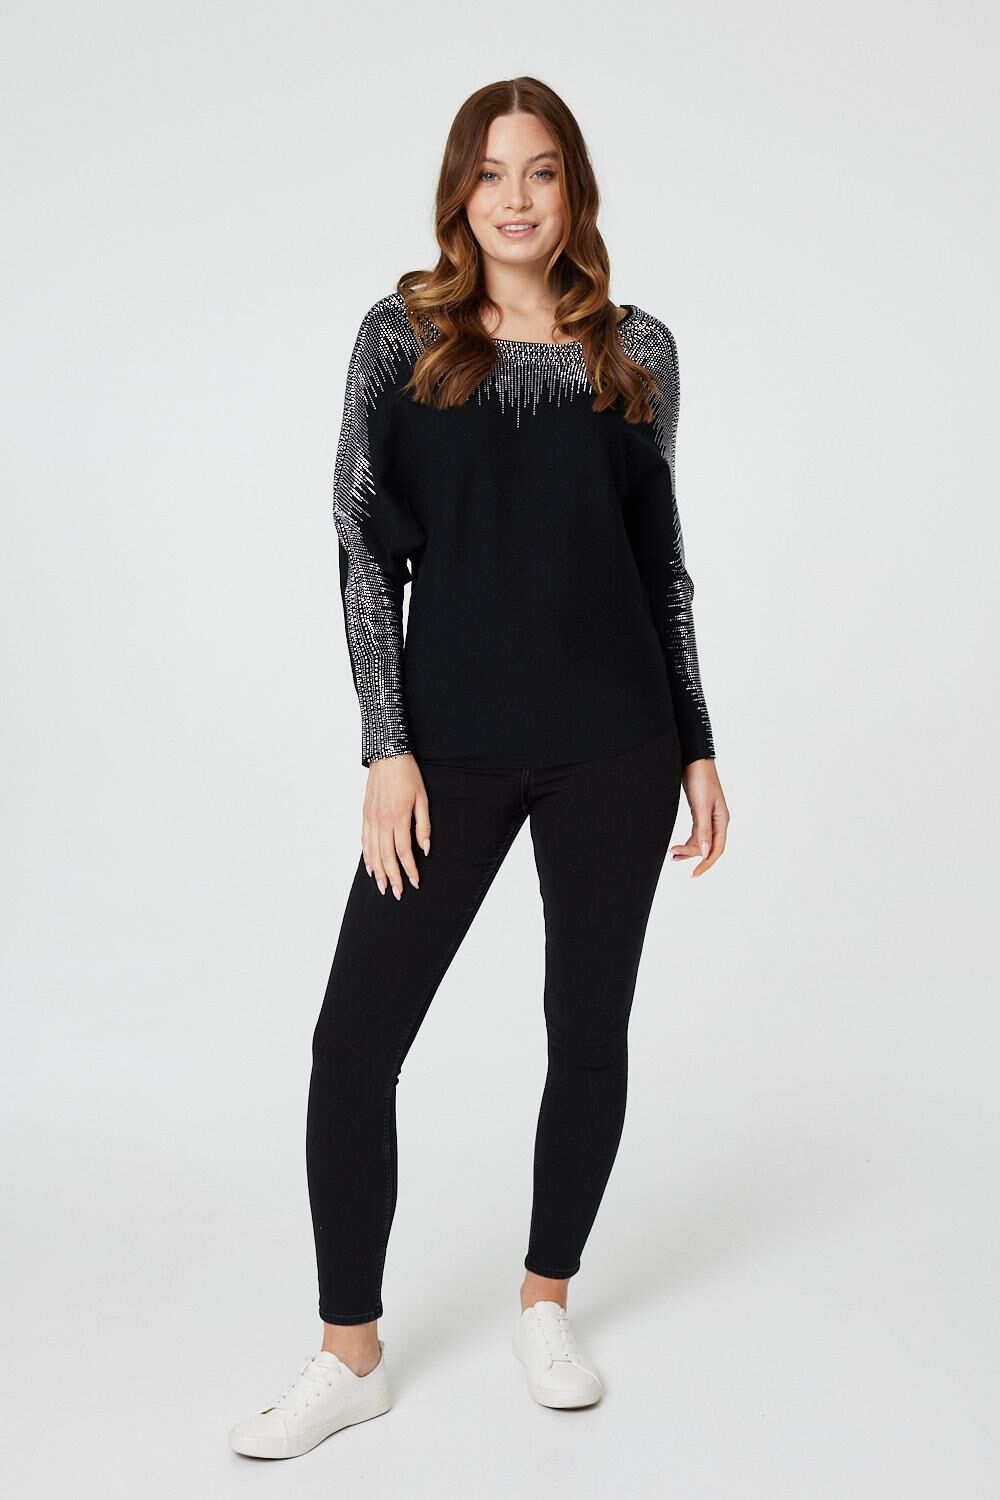 Izabel London Black - Embellished Diamante Knit Jumper, Size: 10